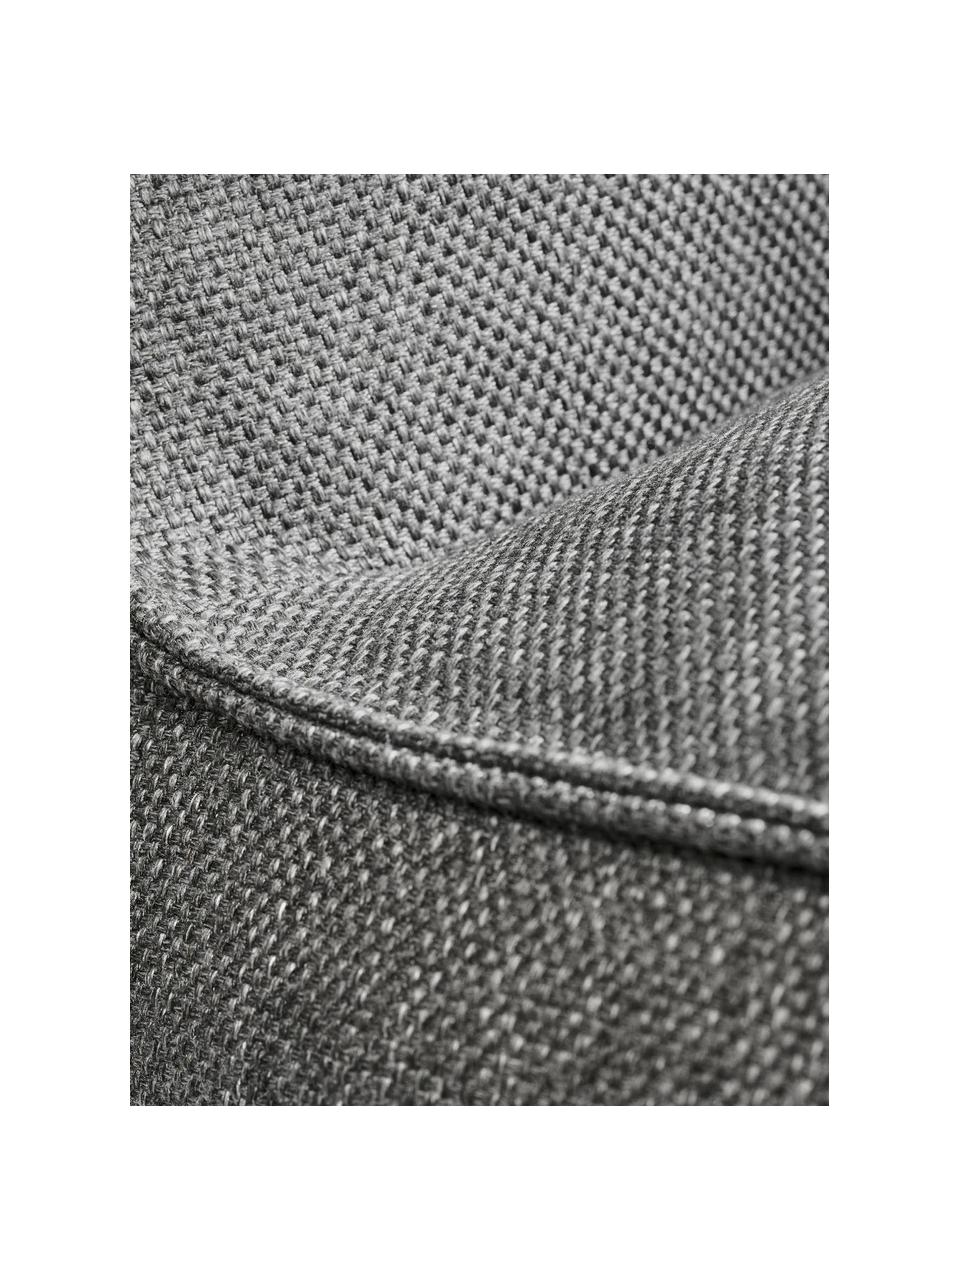 Chaise longue d'extérieur Grow, Tissu gris foncé, larg. 75 x prof. 145 cm